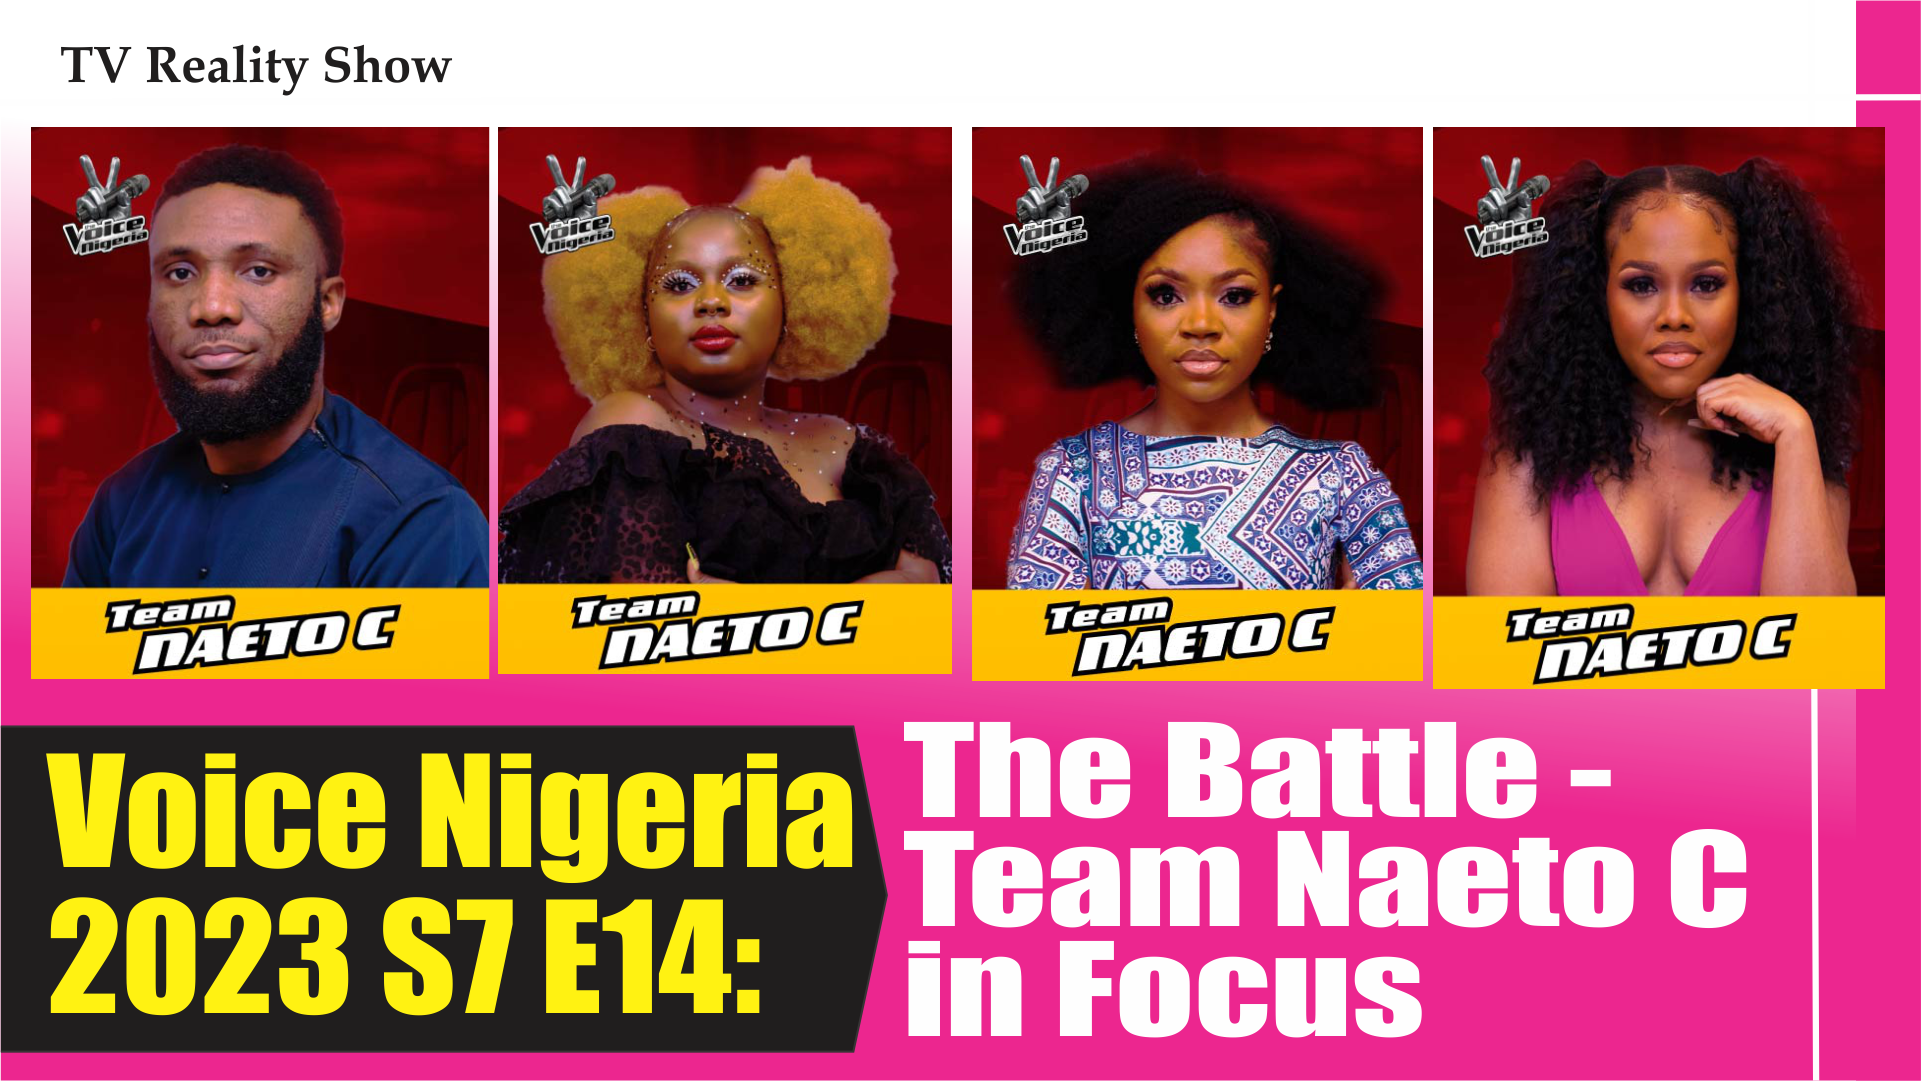 The Voice Nigeria 2023 Season 4 Episode 14 – Team Naeto C in Focus